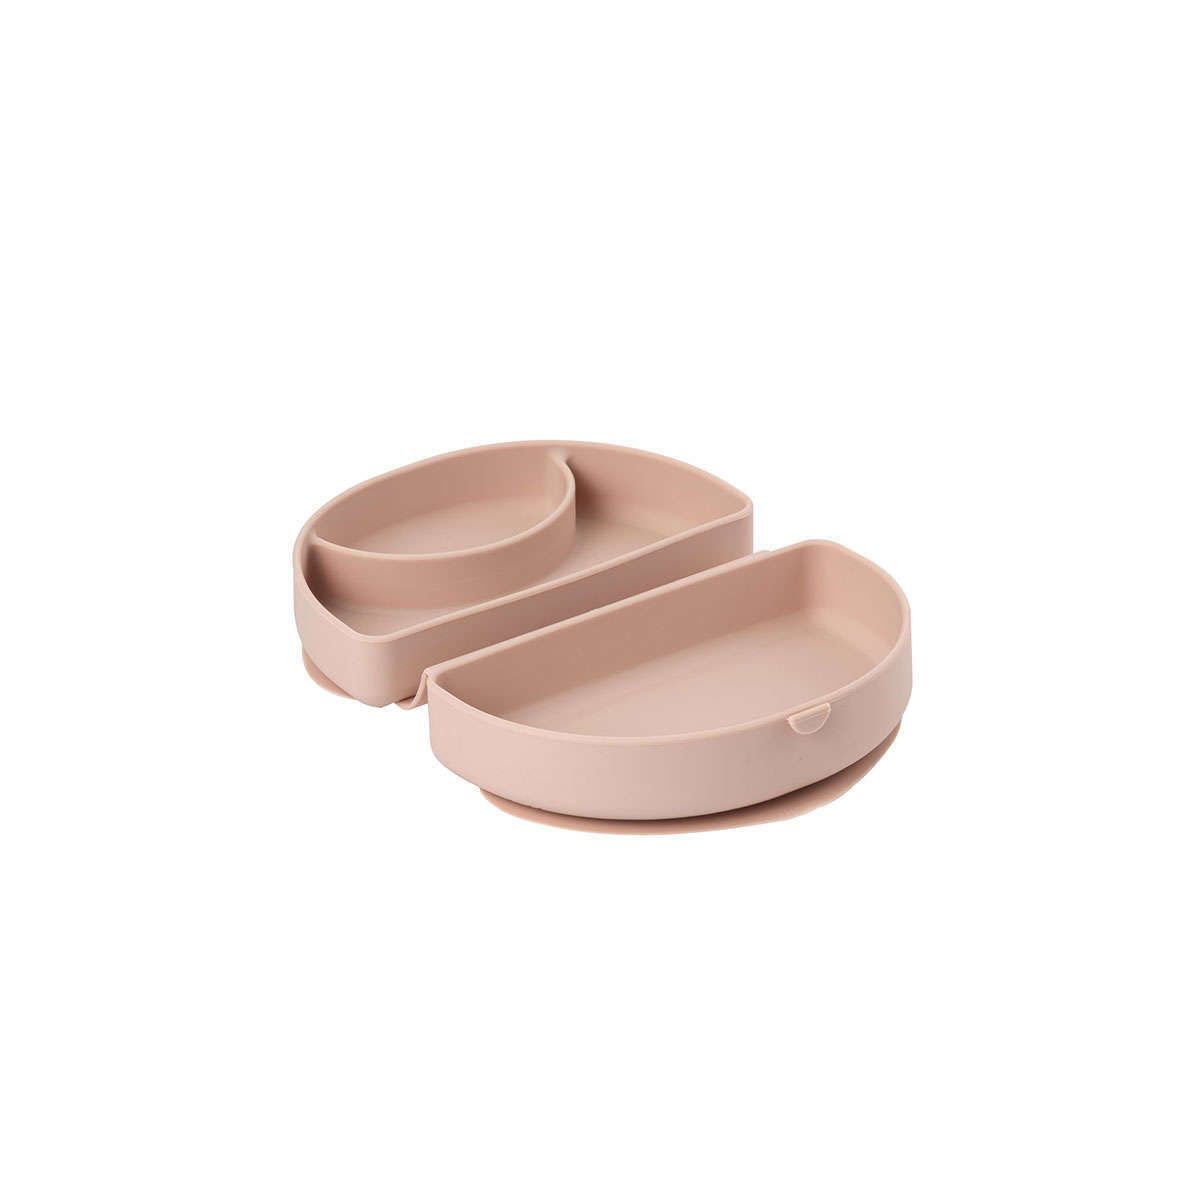 Αναδιπλούμενο πιάτο σιλικόνης Des.12 pink miniware